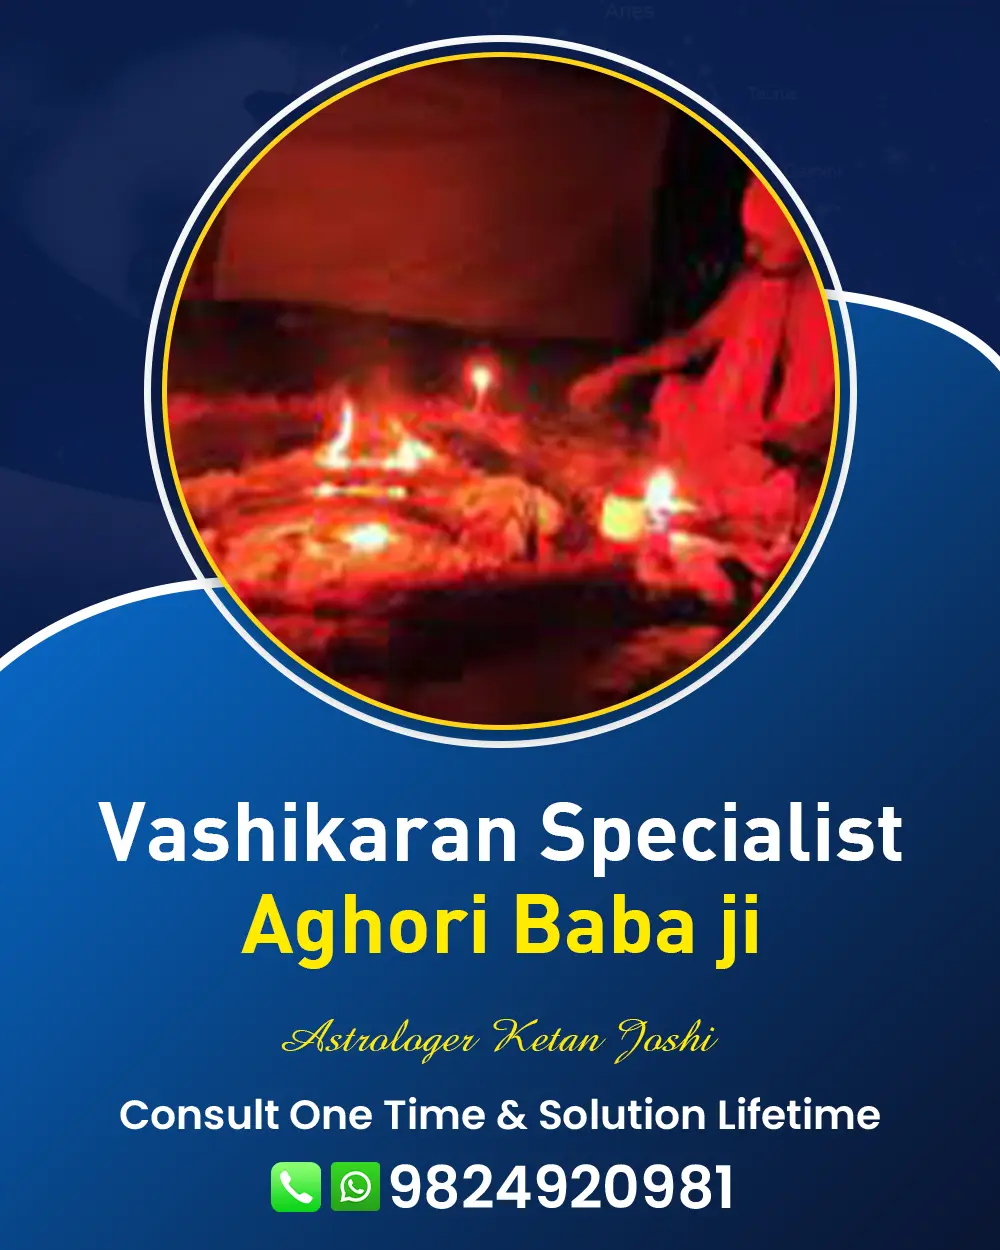 Vashikaran Specialist Astrologer In Chotila